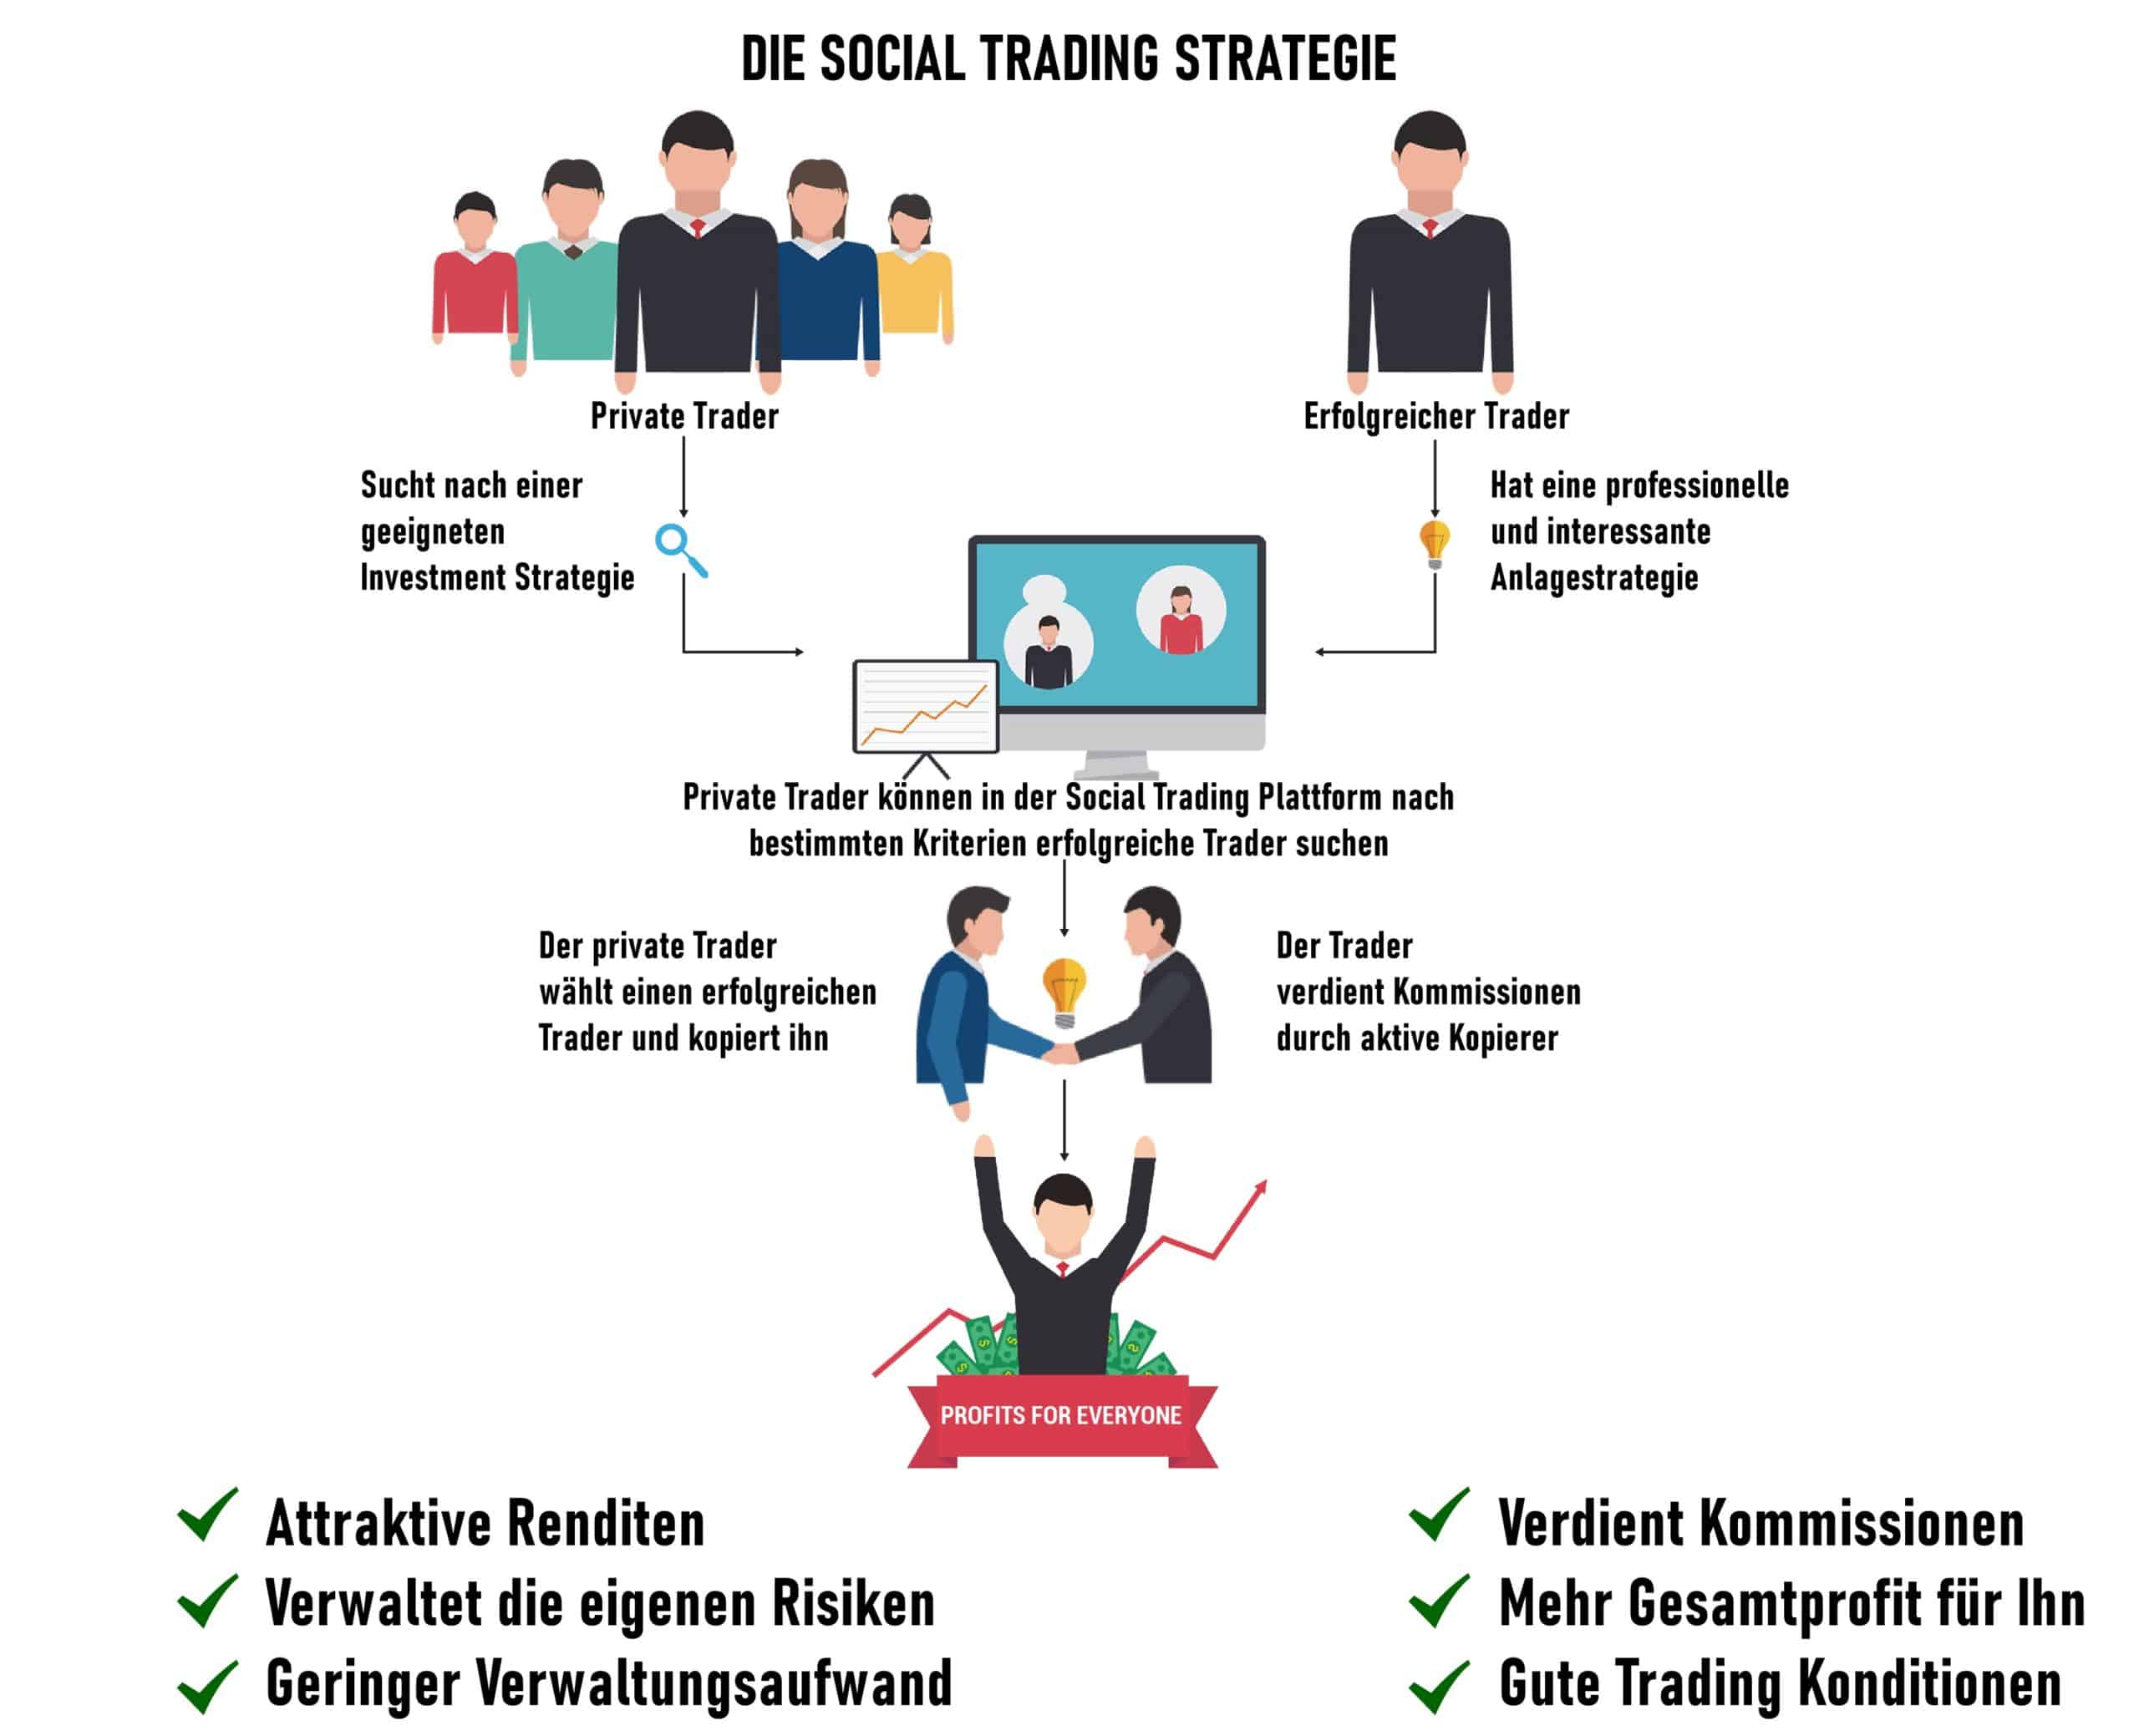 Die Social Trading Strategie erklärt 